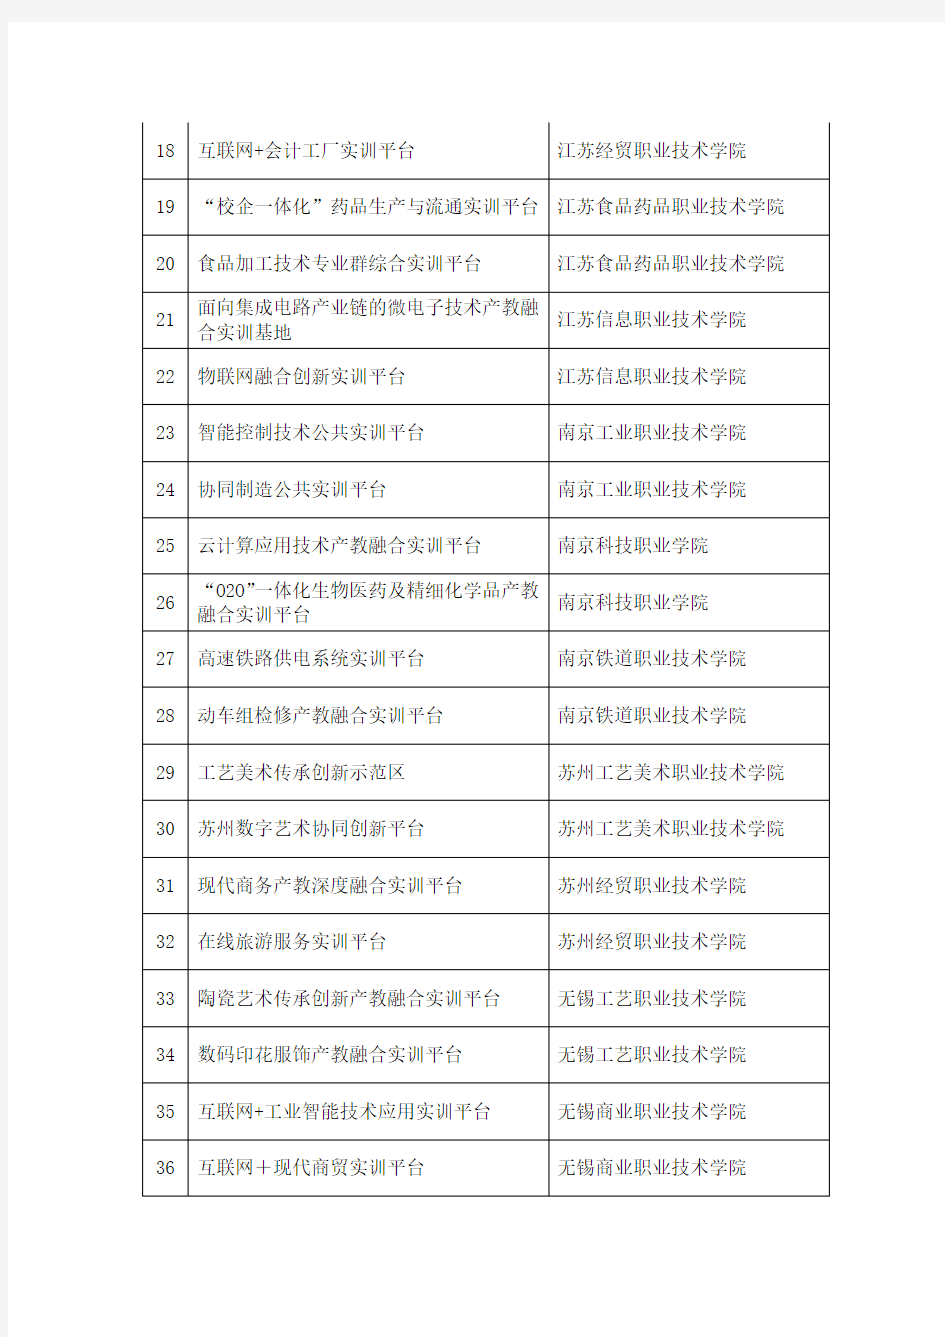 江苏省高等职业教育产教深度融合实训平台名单